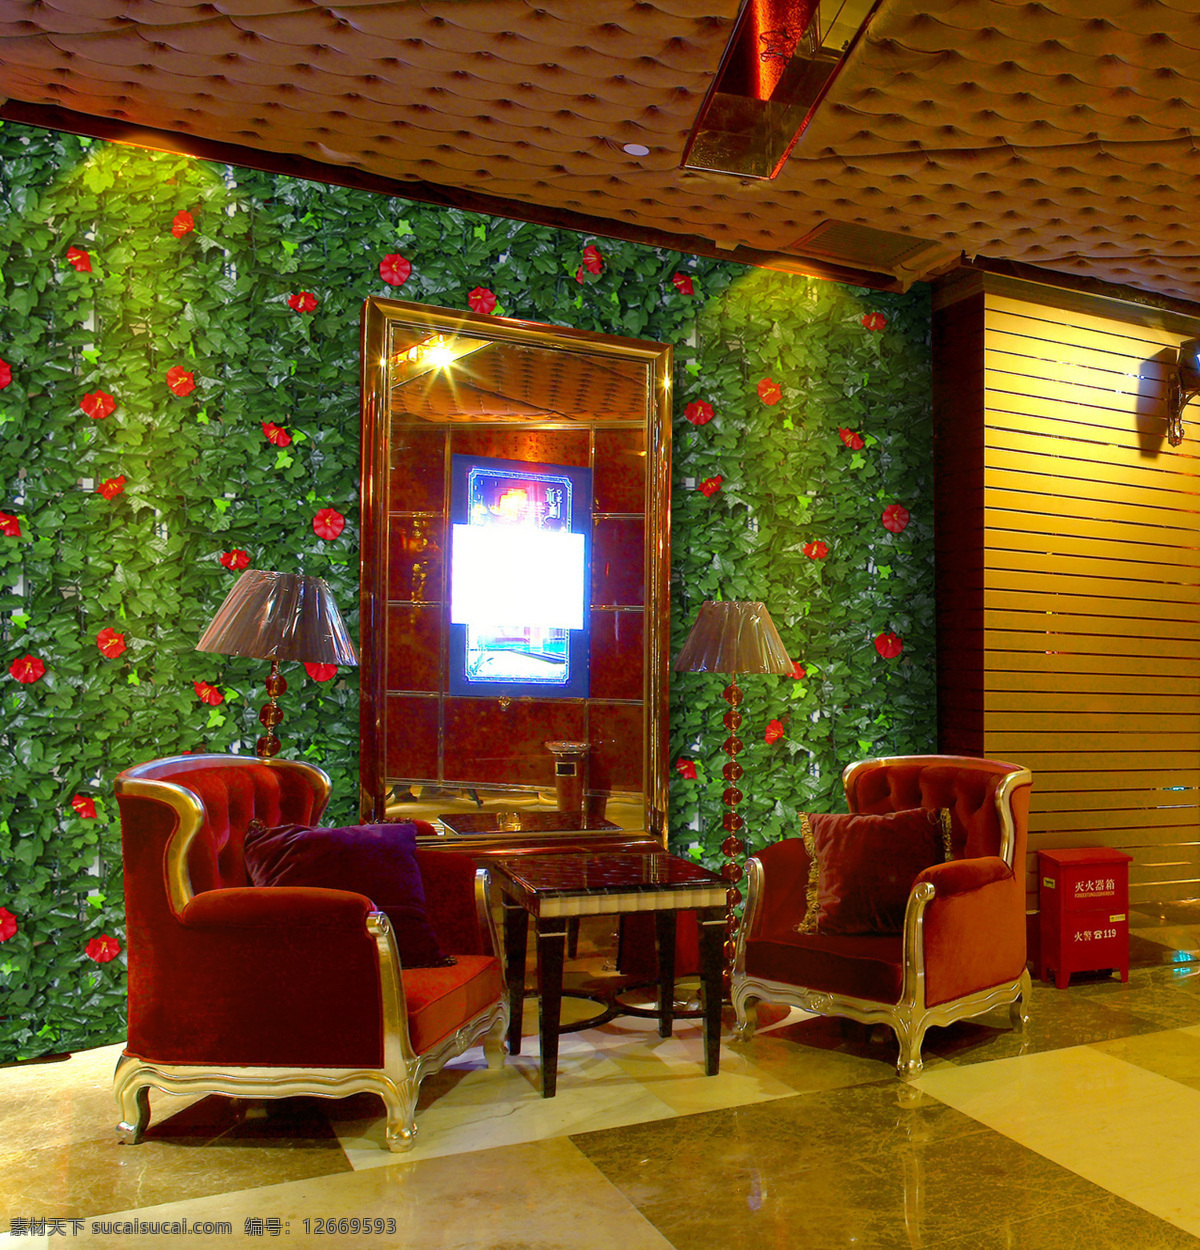 背景墙 餐馆 环境设计 酒店 绿化 绿色 墙面 植物 室内背景墙 绿色屏风 仿真植物叶 仿真植物 装饰 室内设计 装饰素材